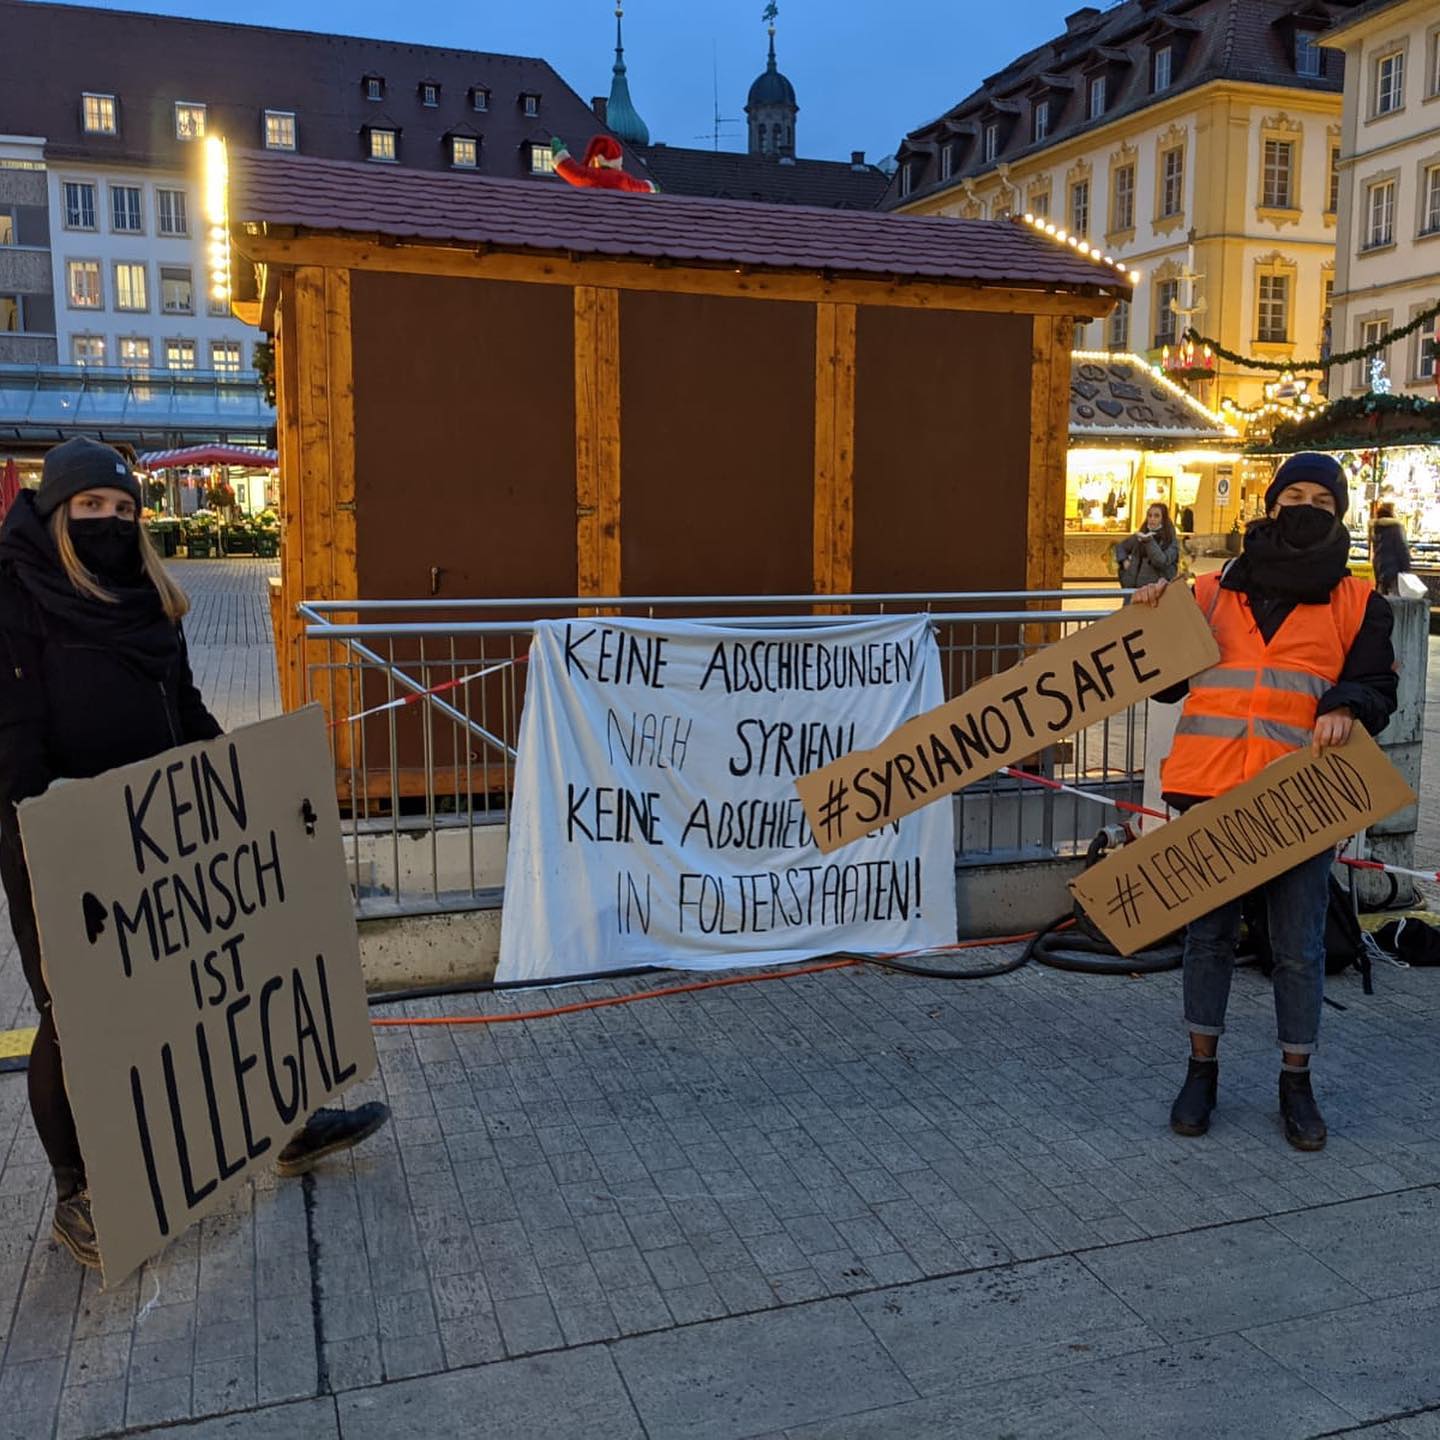 ناشطون سوريون في ألمانيا يتظاهرون ضد قرار ترحيل لاجئين سوريين إلى سوريا بدءًا من العام المقبل- كانون الأول 2020 (صفحة "سوريا غير آمنة عبر "فيس بوك")